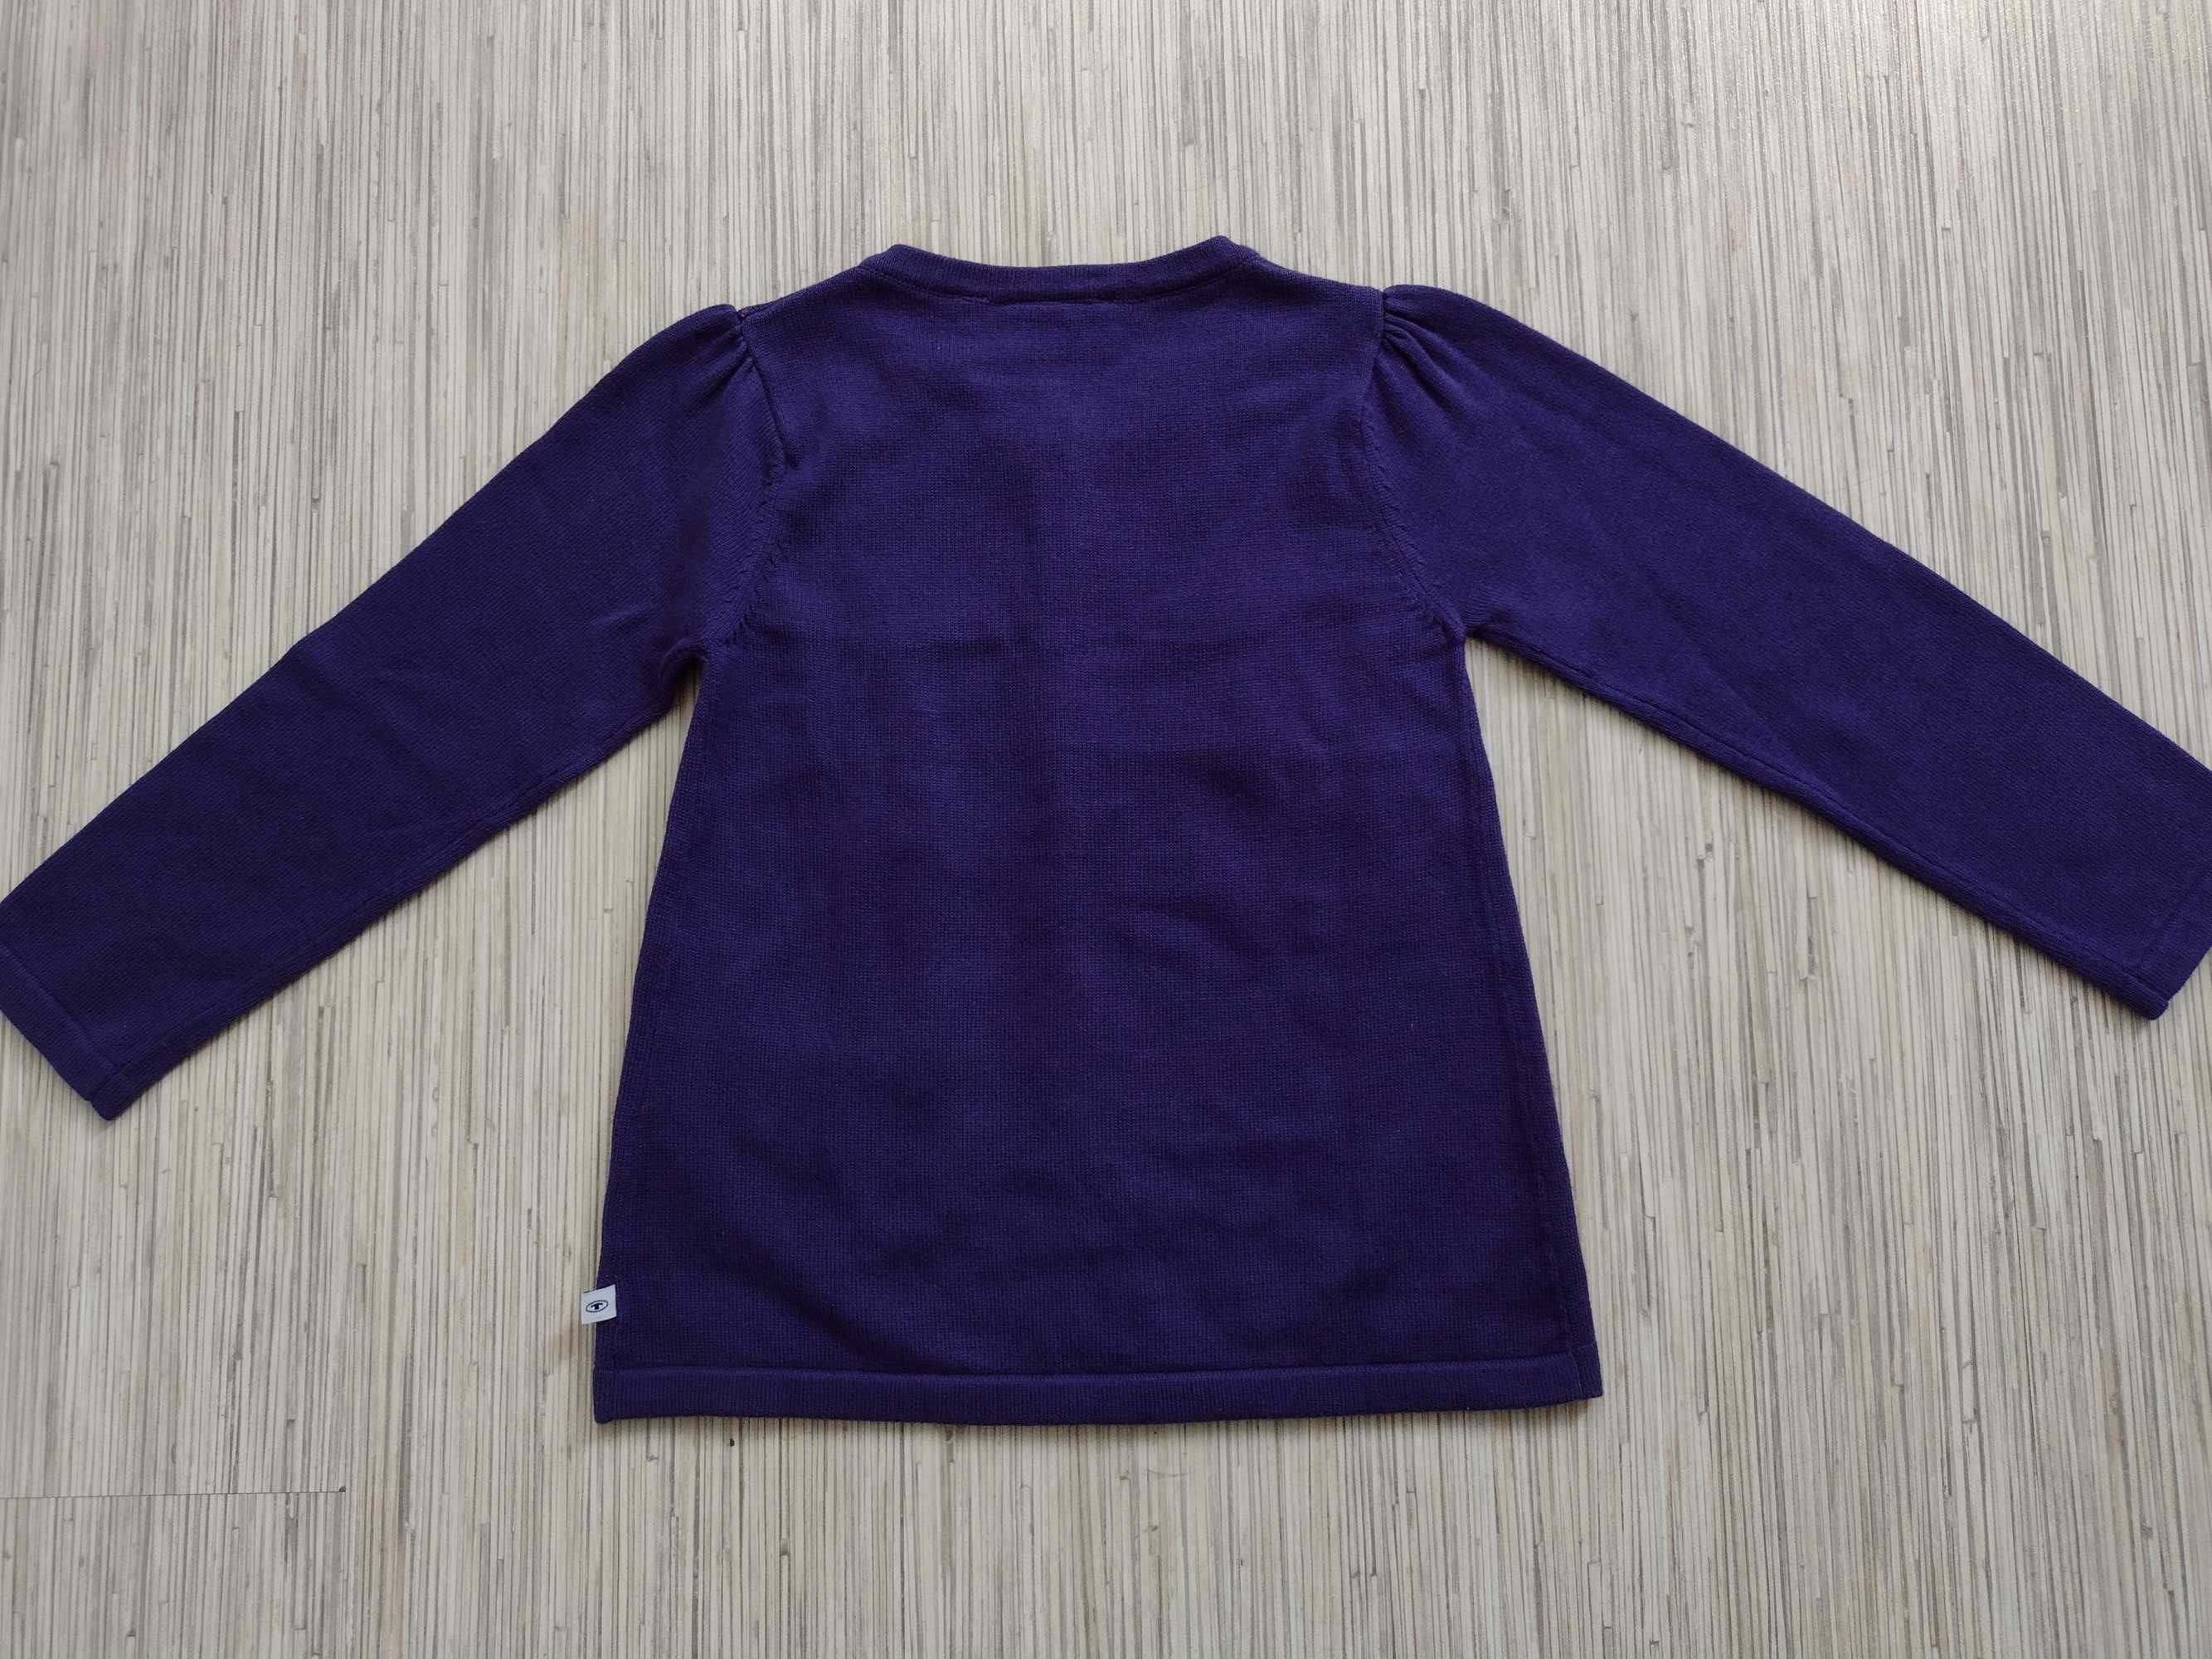 TOM TAILOR, rozmiar 104-110, sweter / narzutka dla dziewczynki